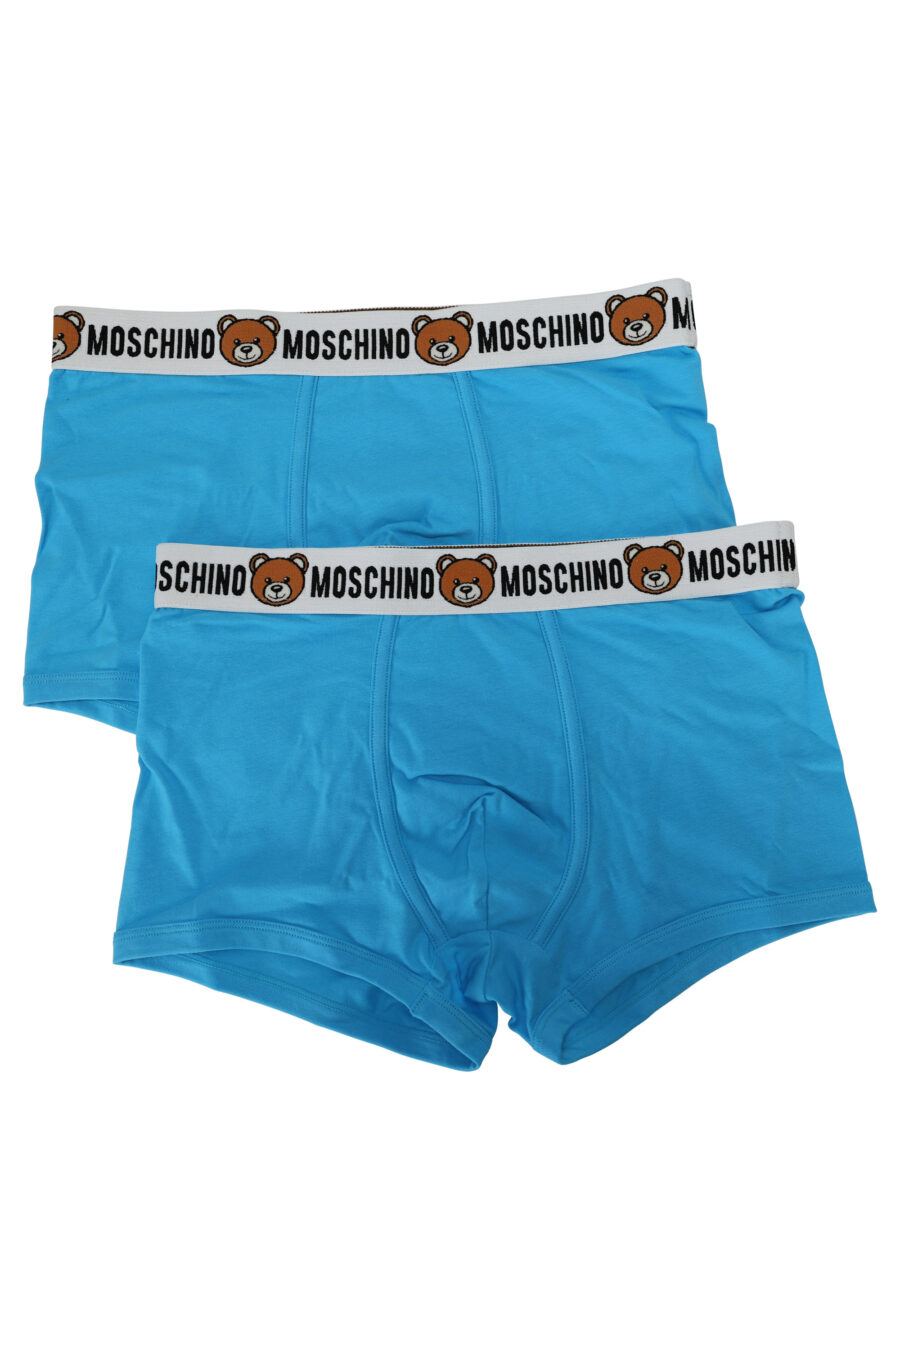 Pack de boxers azules con logo oso en cinta - 667113612508